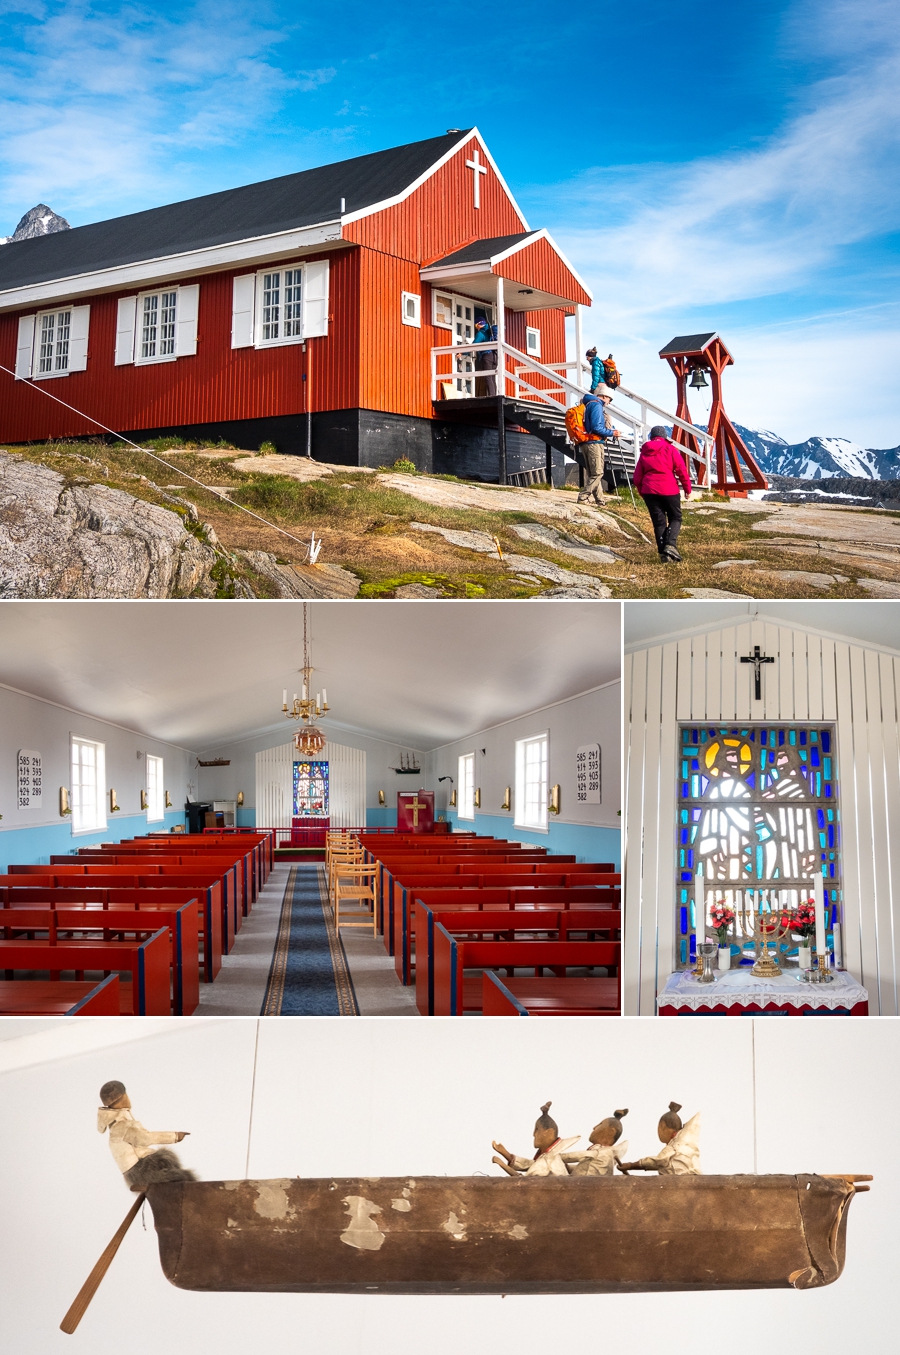 Kuummiut church - East Greenland